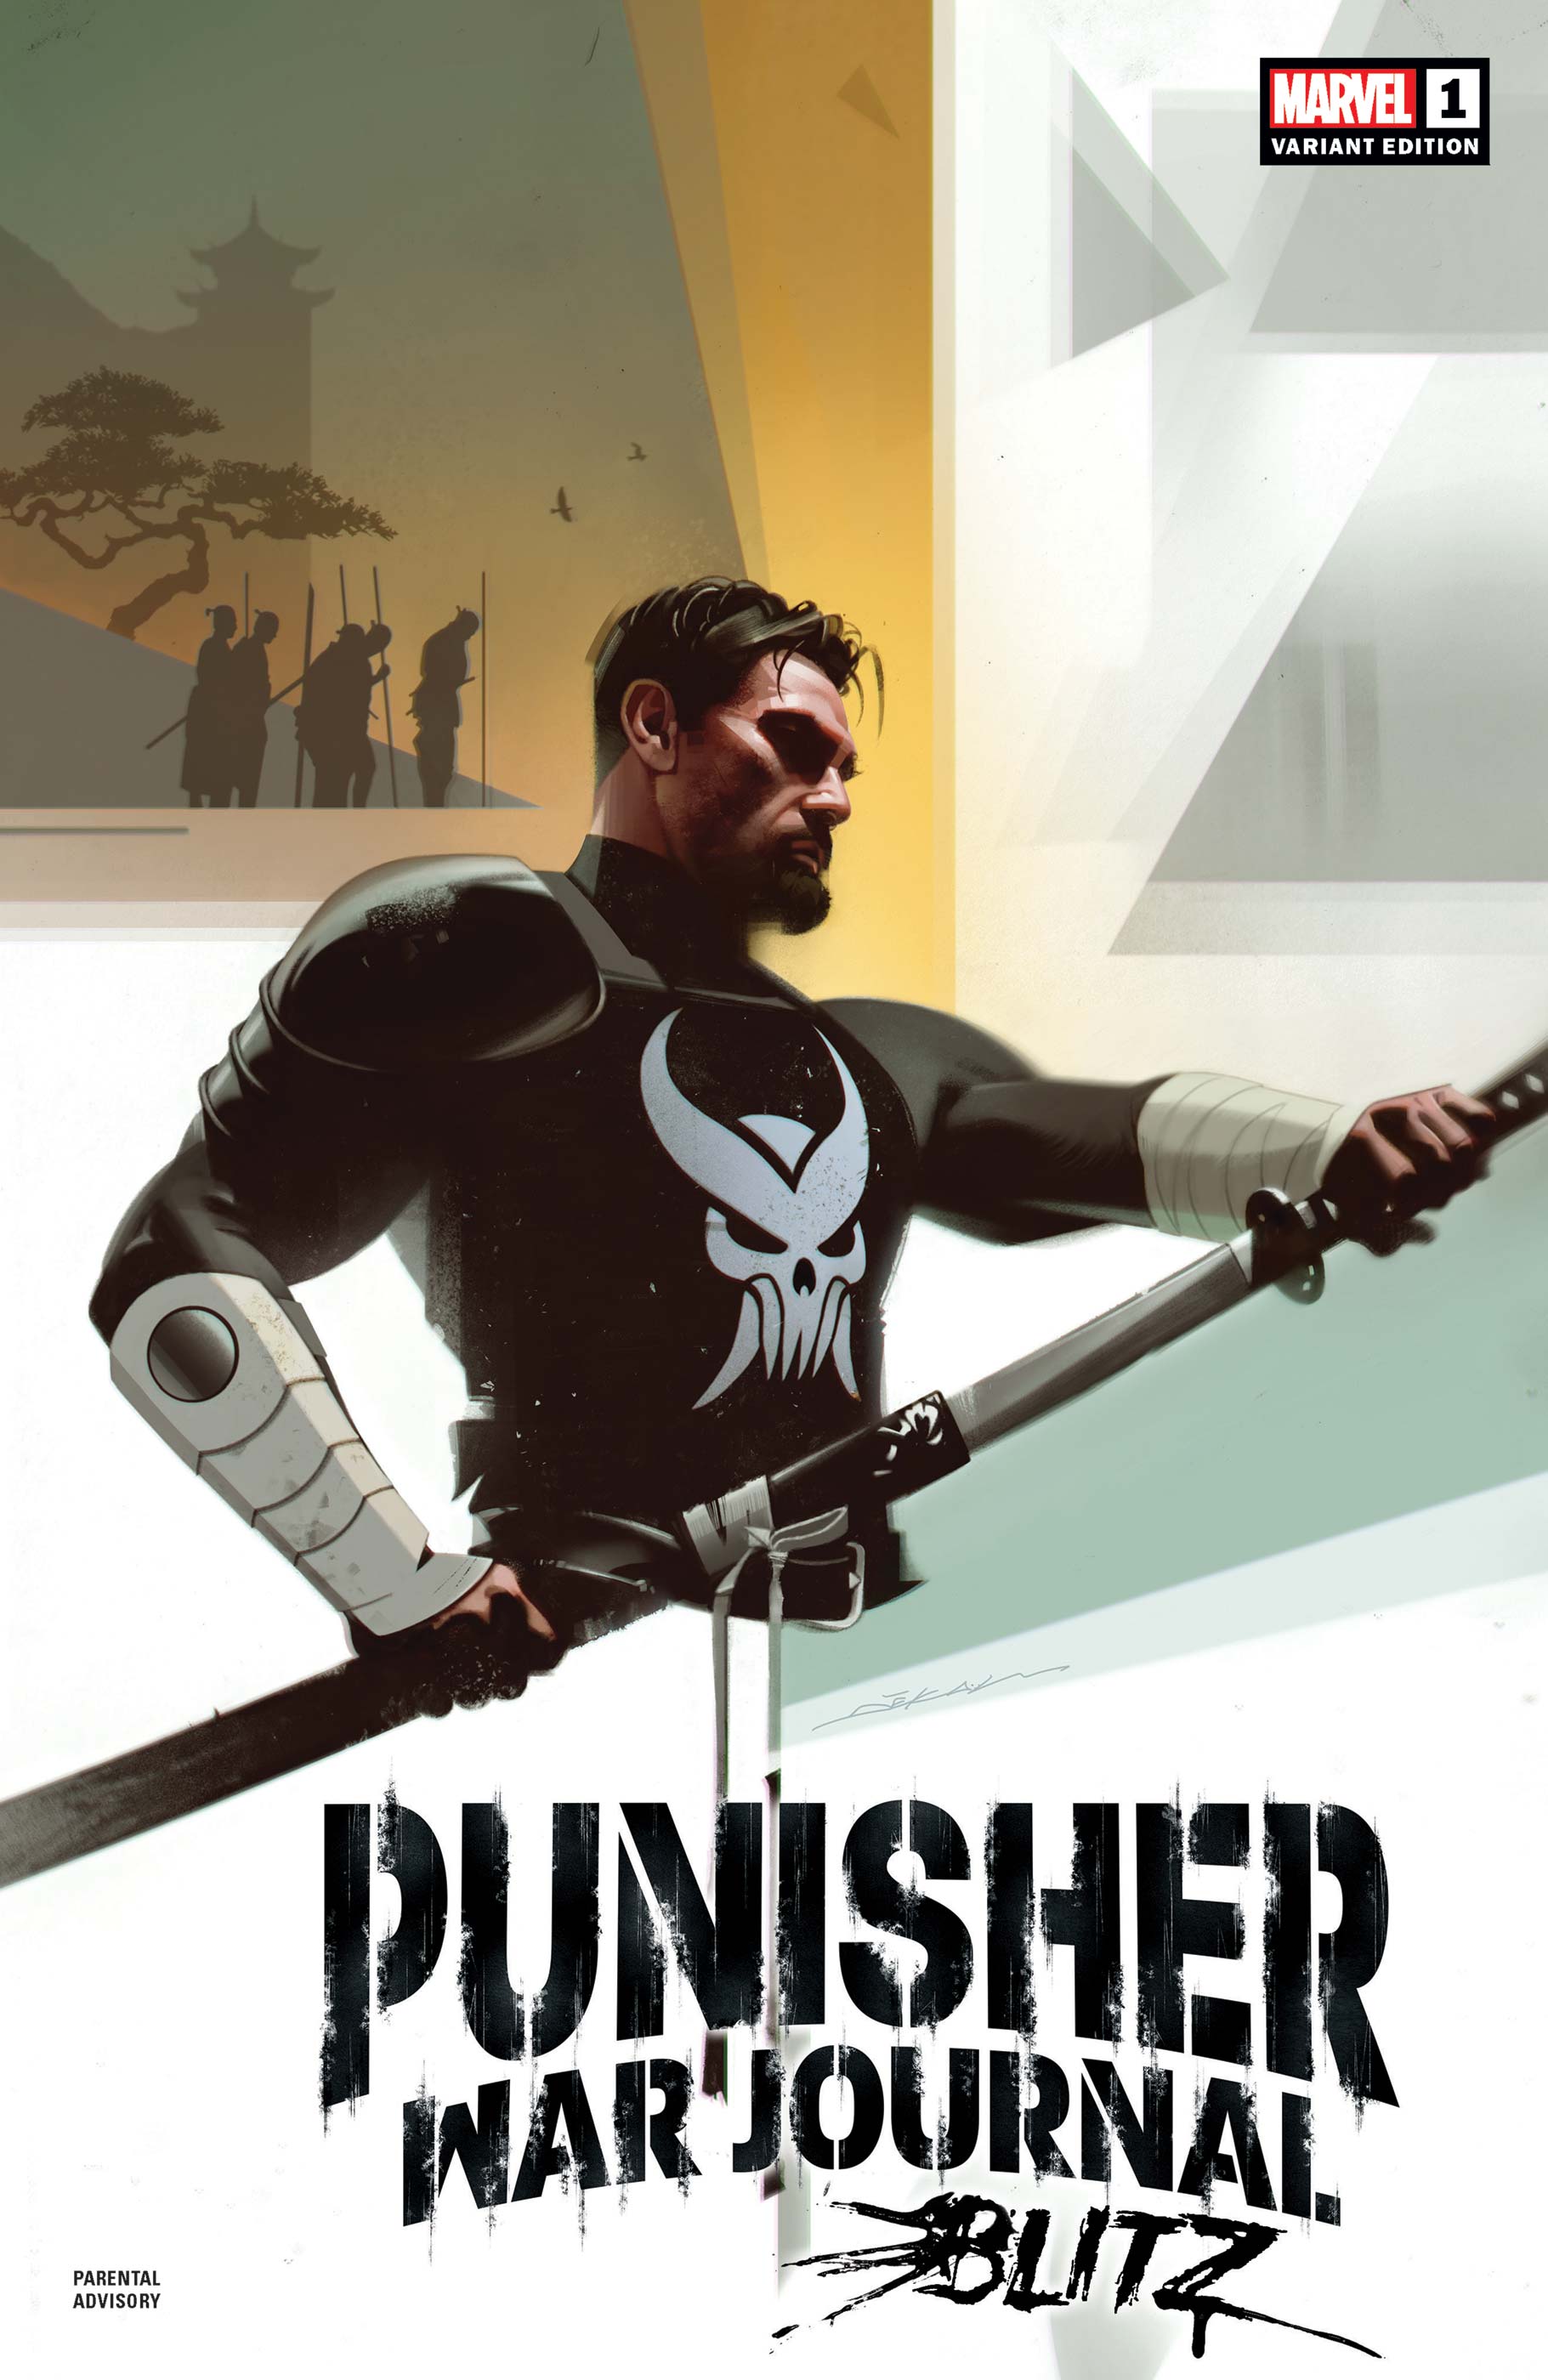 Punisher War Journal: Blitz (2022) #1 (Variant)